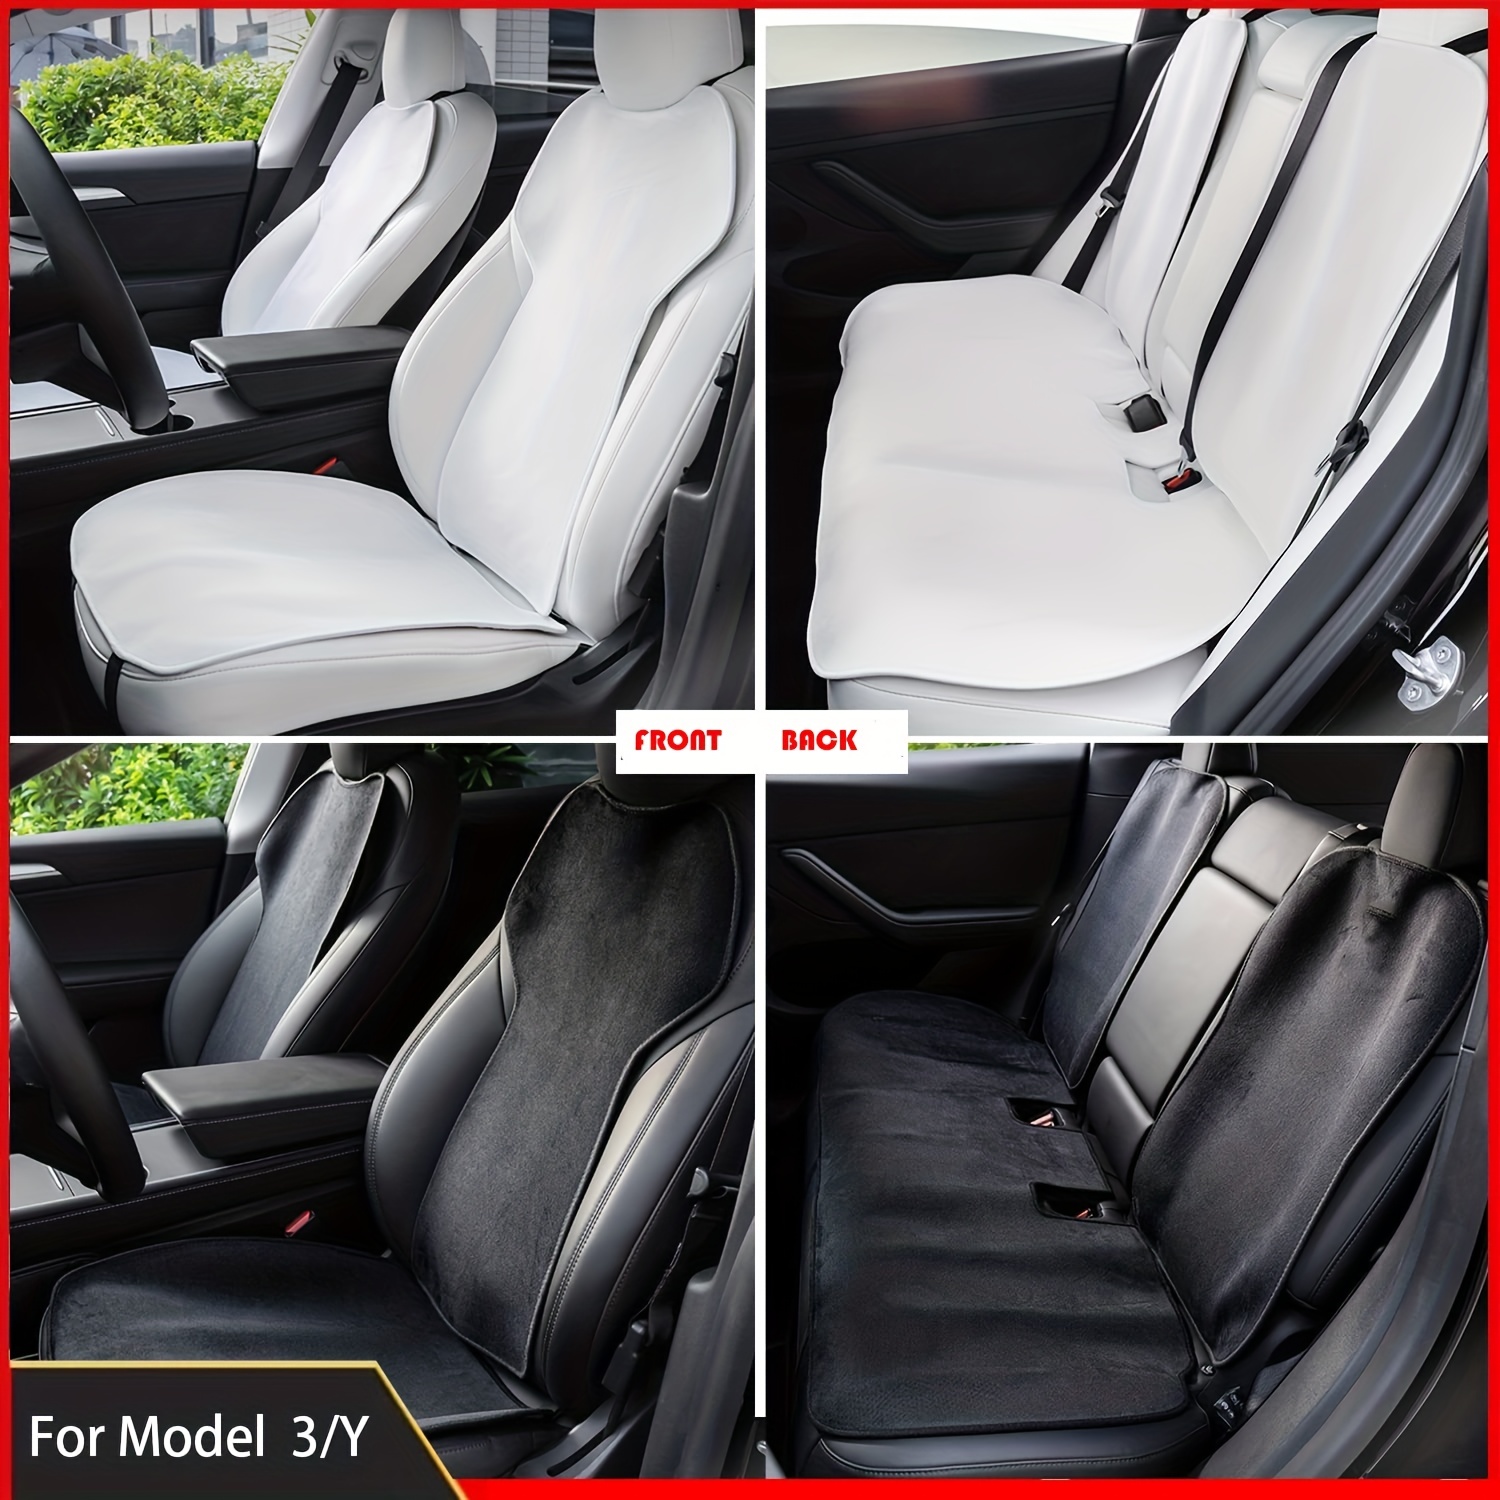 Piora Housse de siège arrière blanche améliorée compatible avec Tesla Model  S / 3 / X/Y - Serviette épaisse - Convient à votre Tesla - Sans sangle